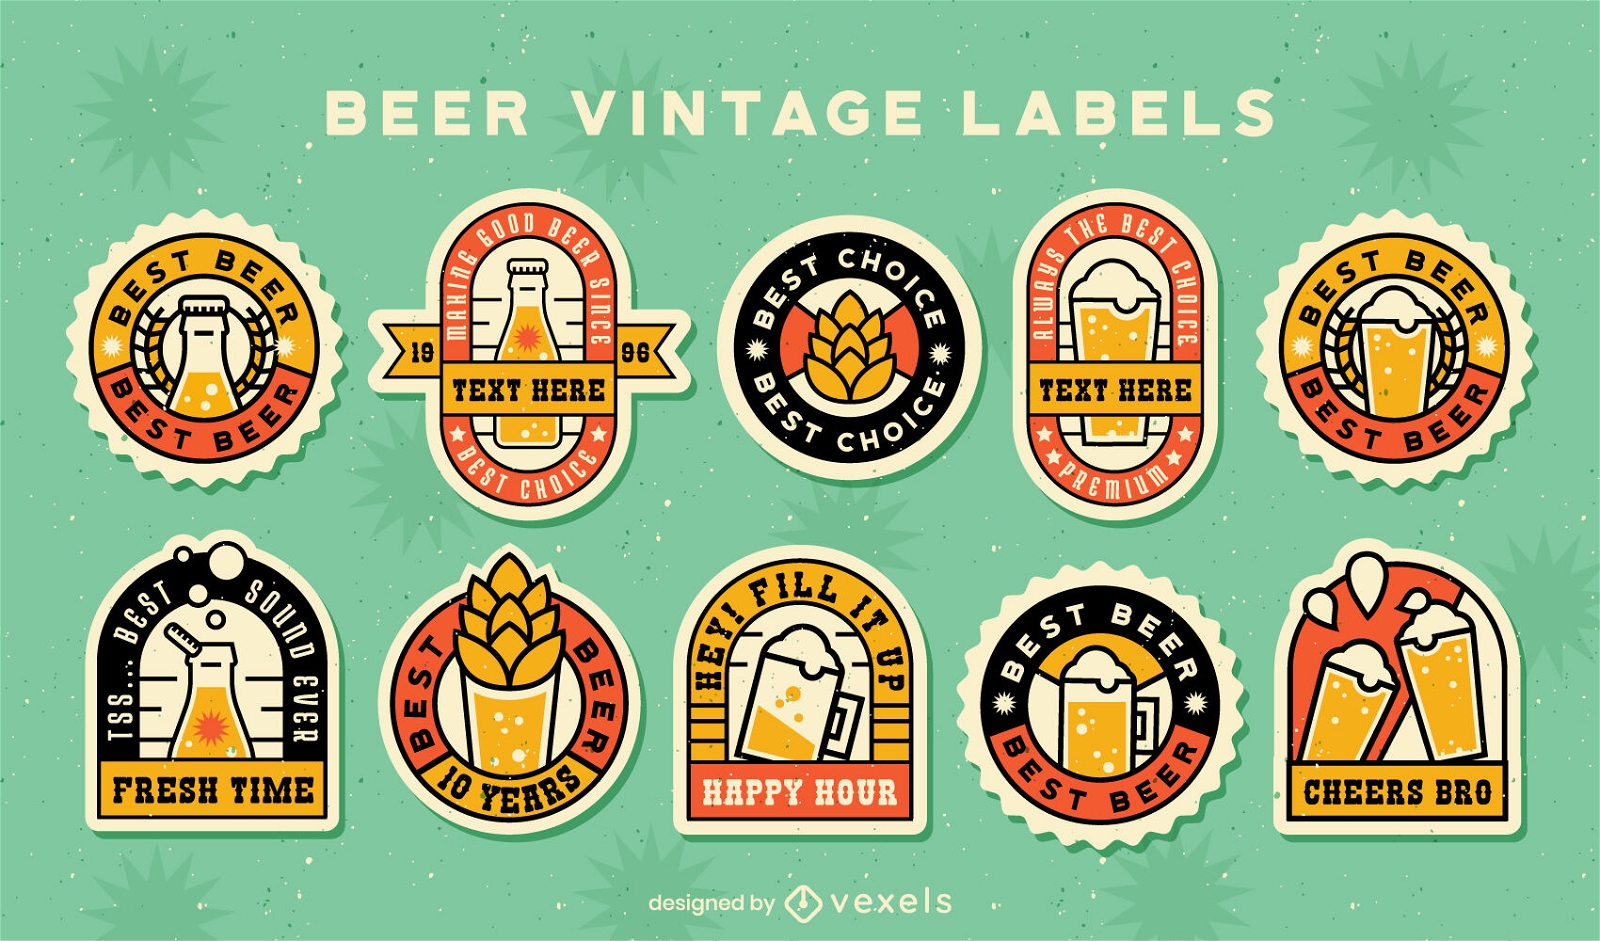 Vintage beer labels set